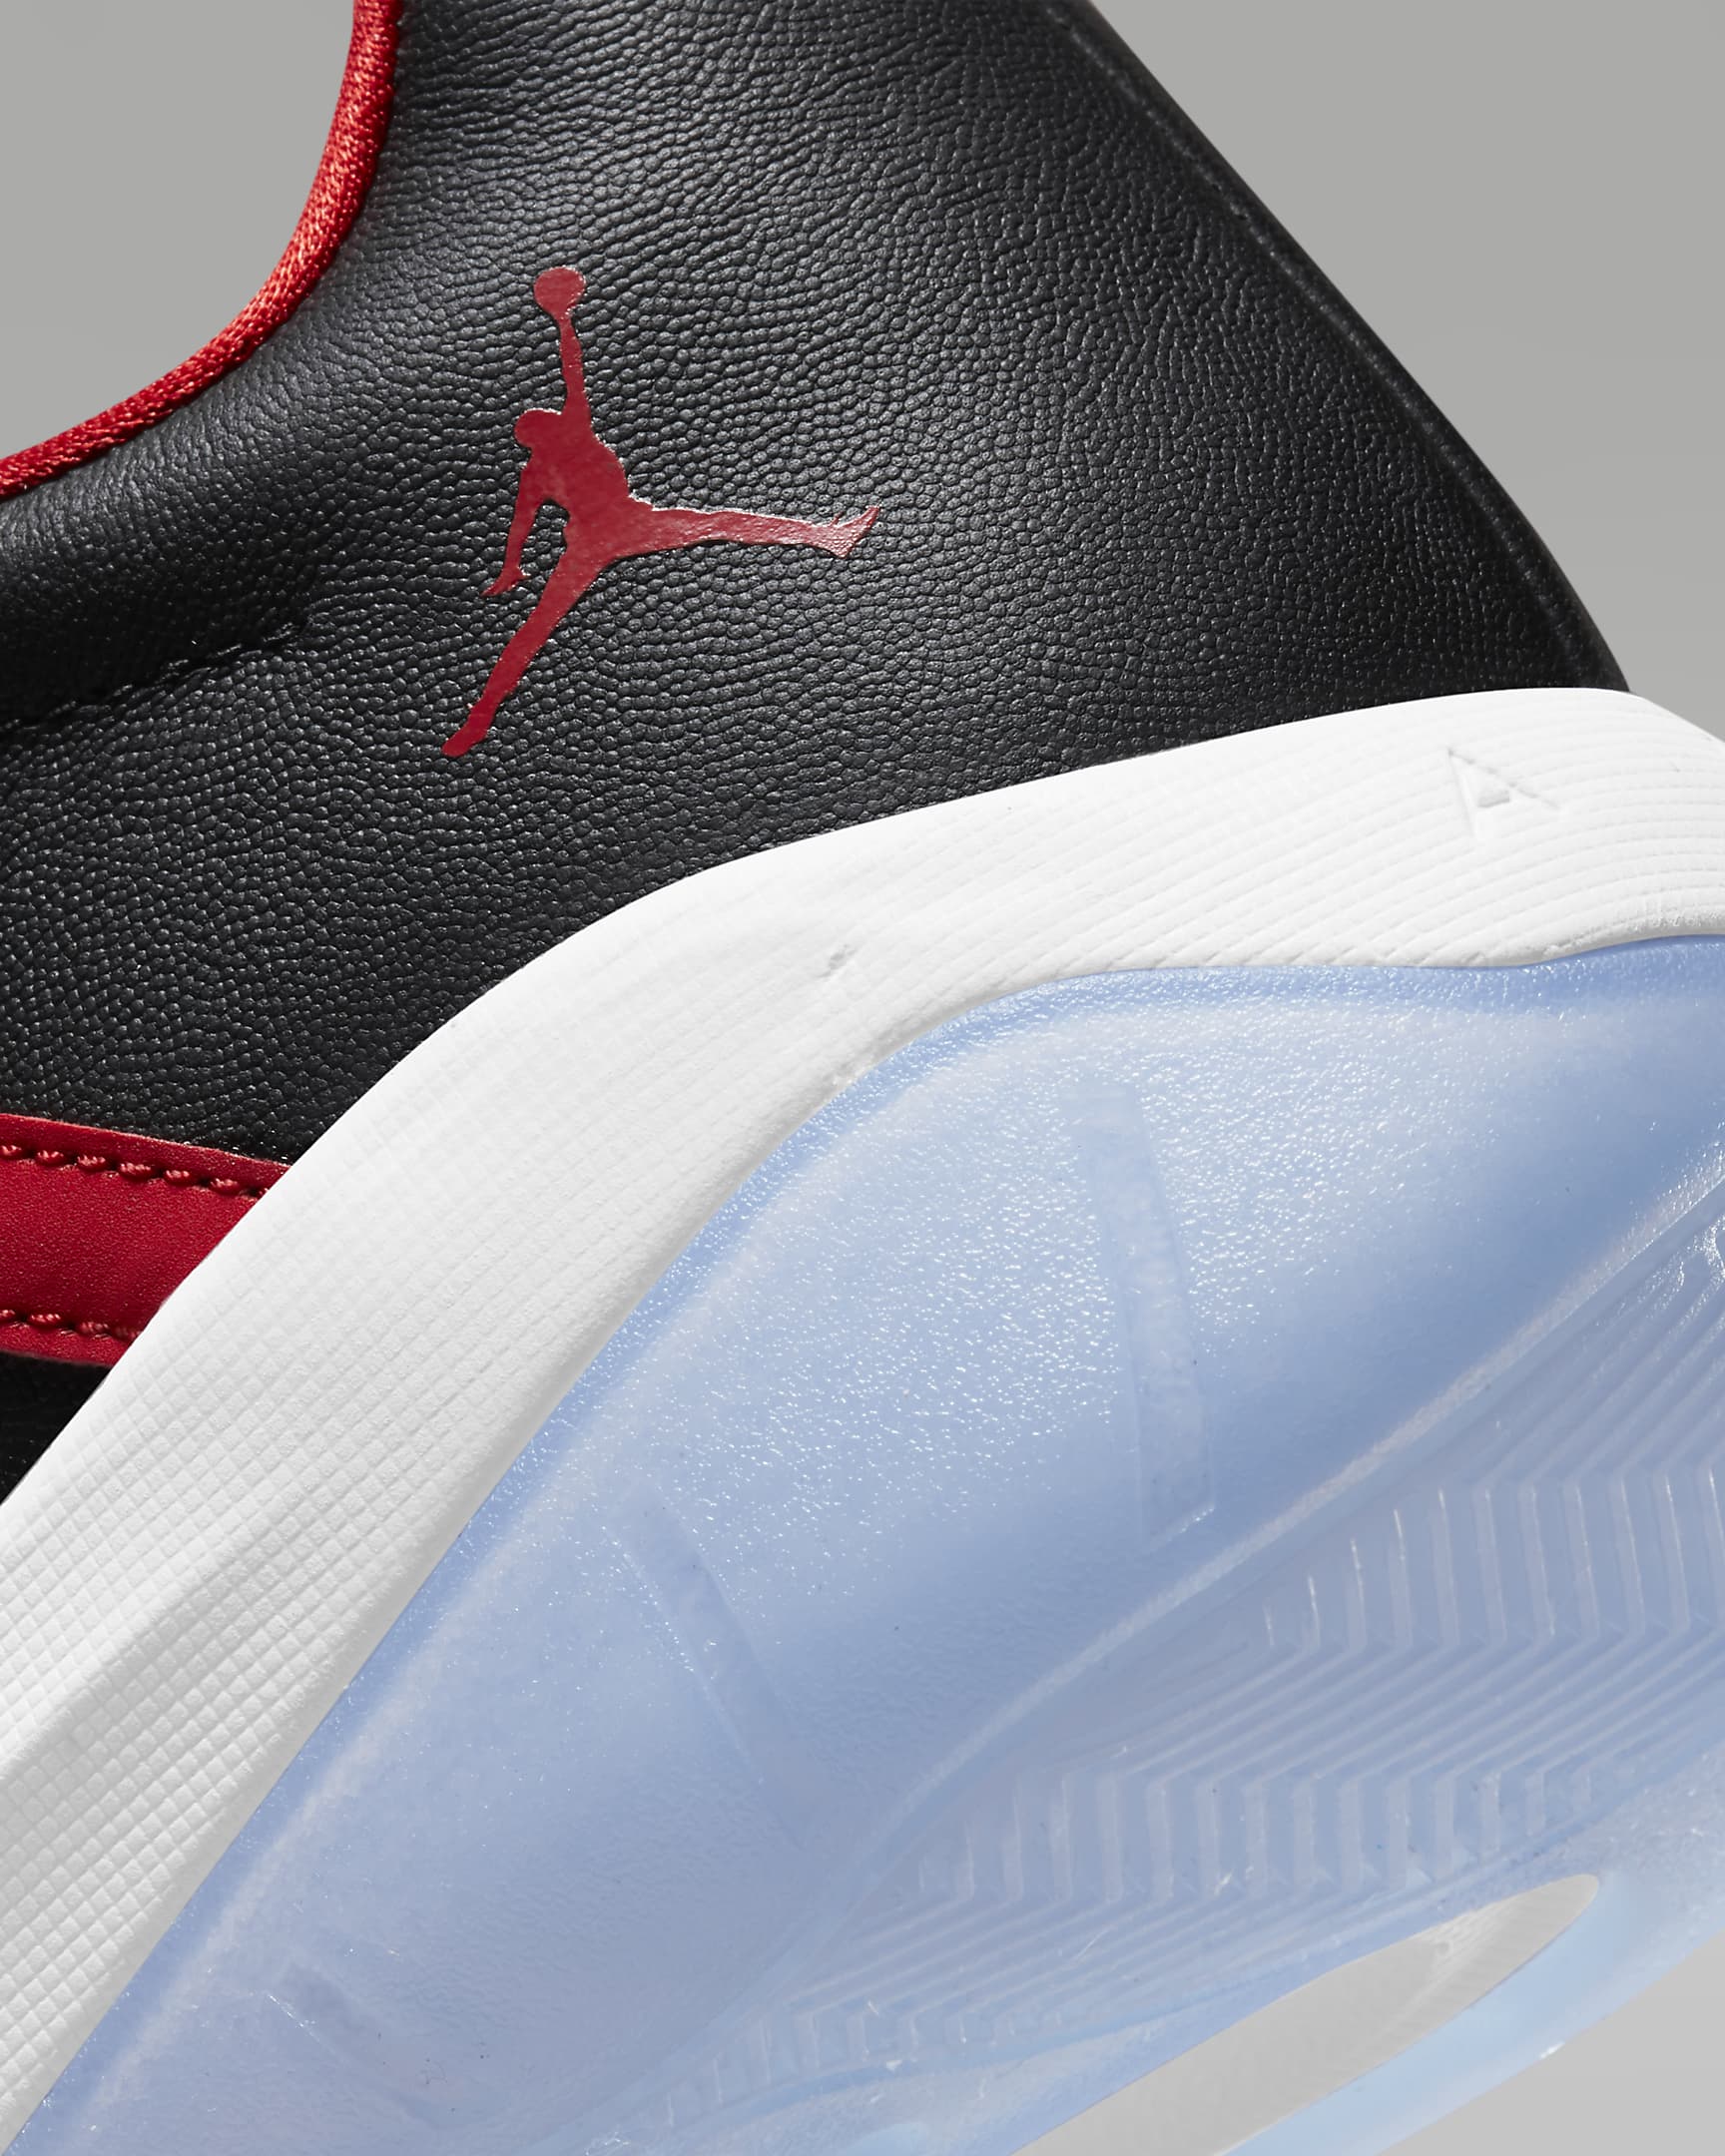 Air Jordan 11 CMFT Low Men's Shoes. Nike FI